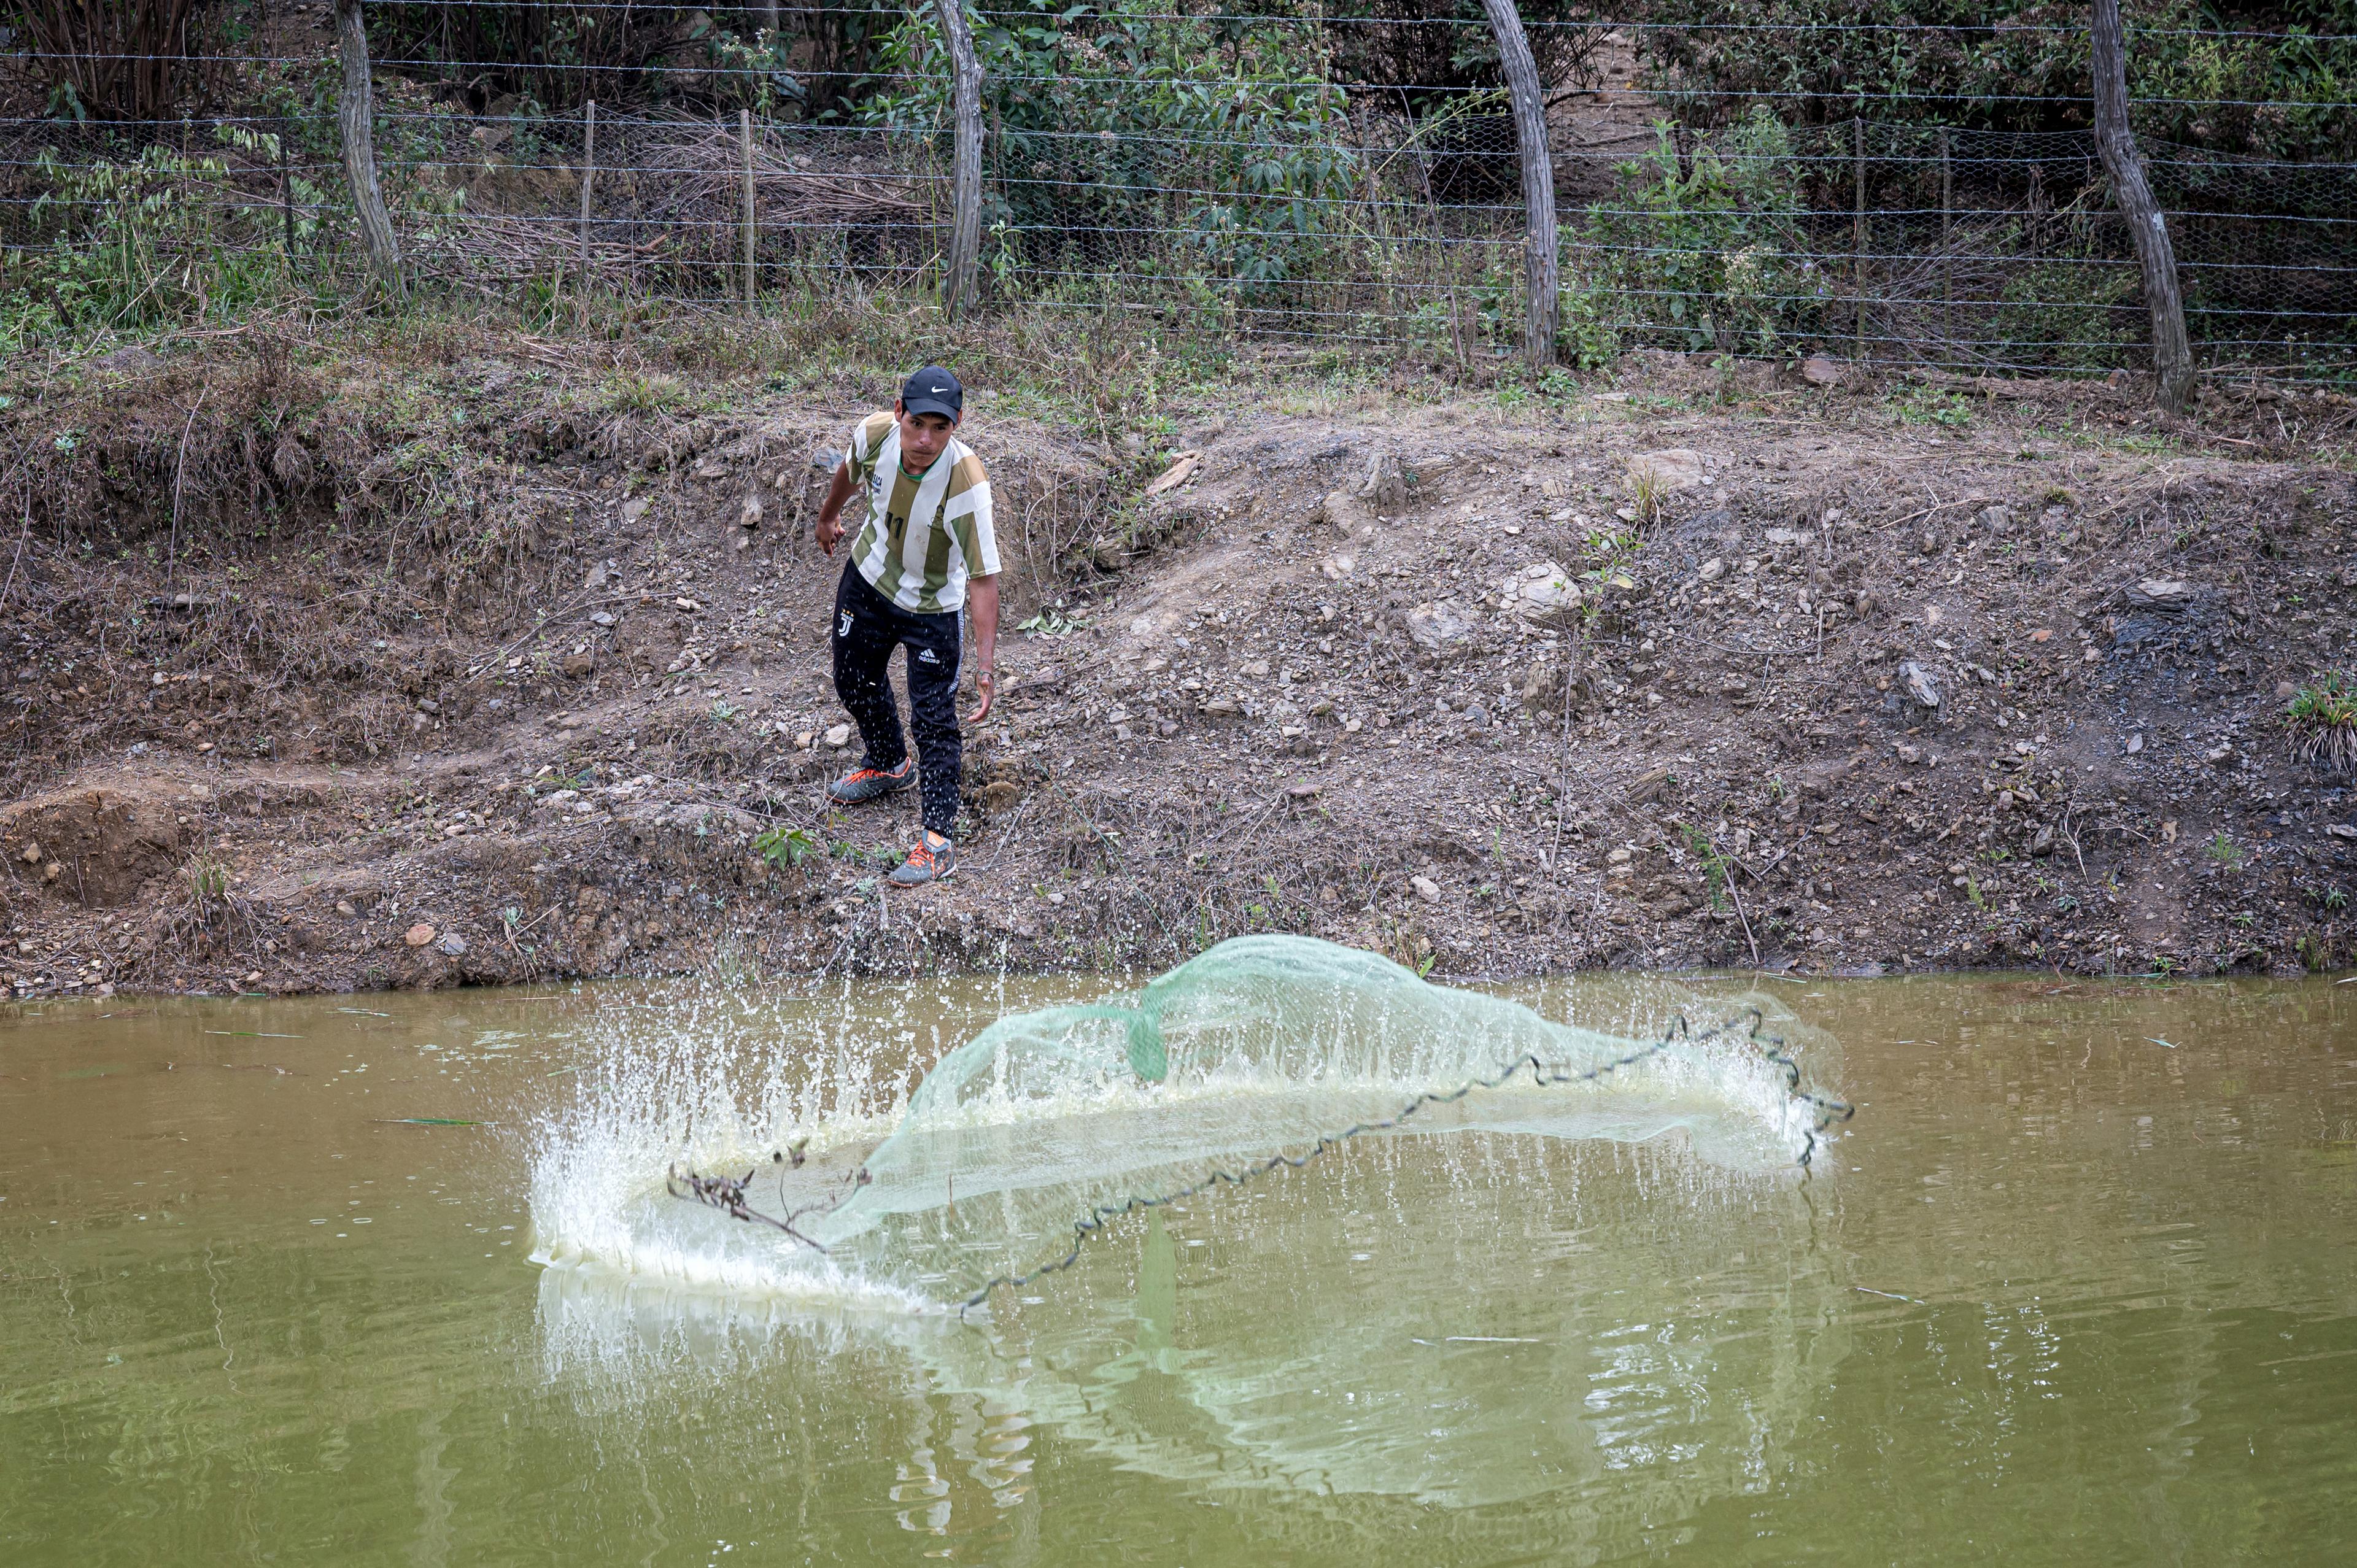 Un uomo lancia in un lago una rete da pesca, che cade assumendo una forma circolare.